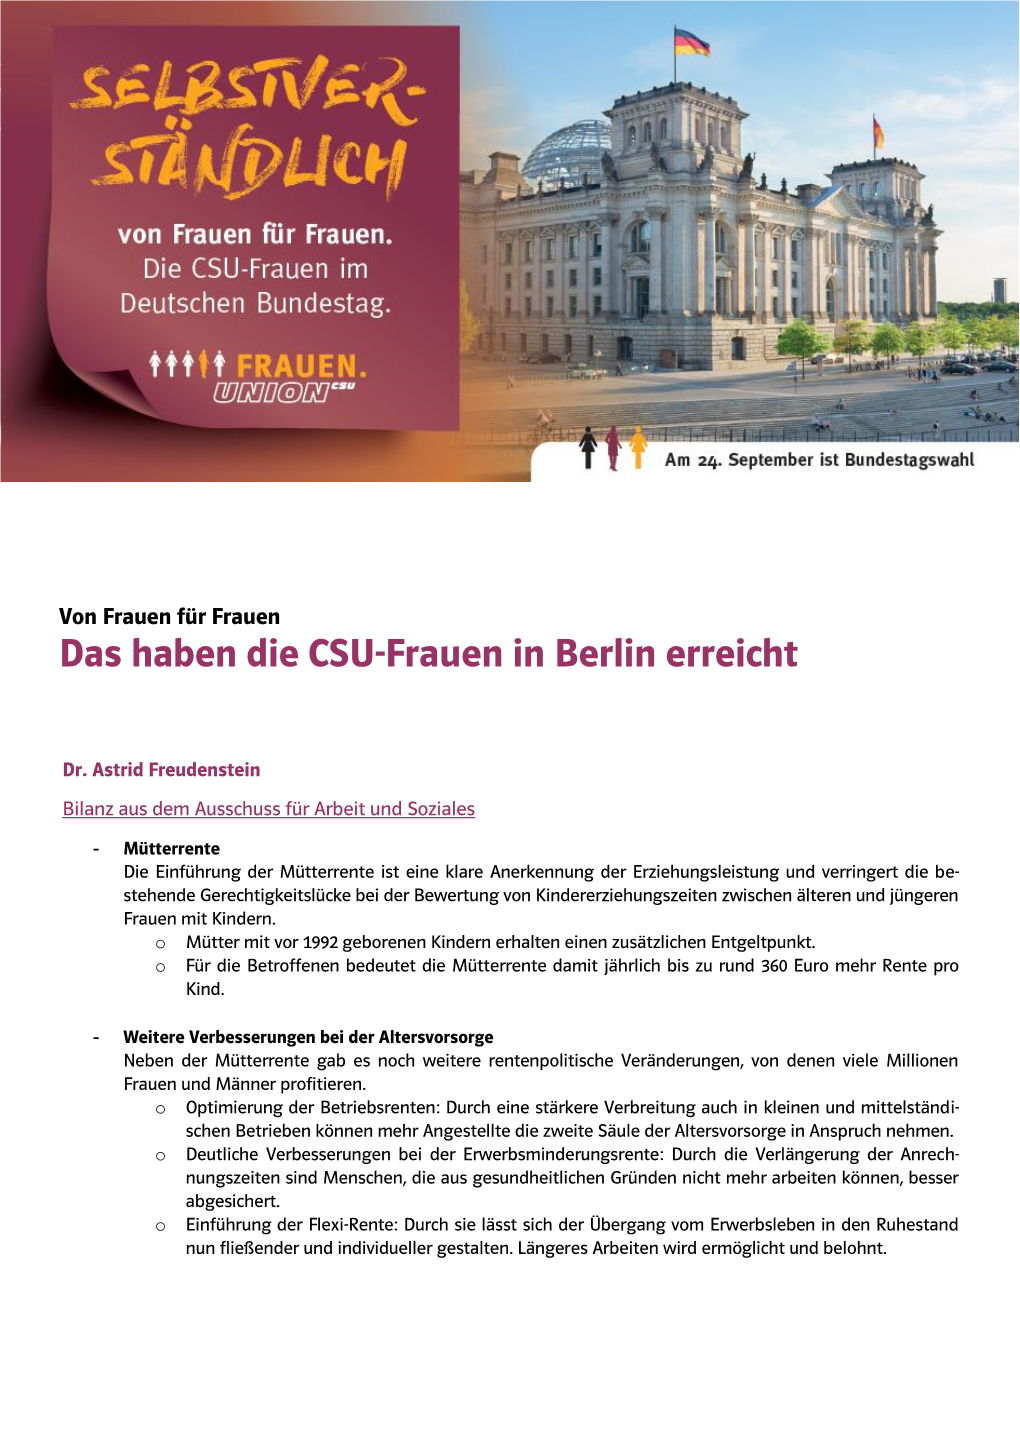 Das Haben Die CSU-Frauen in Berlin Erreicht